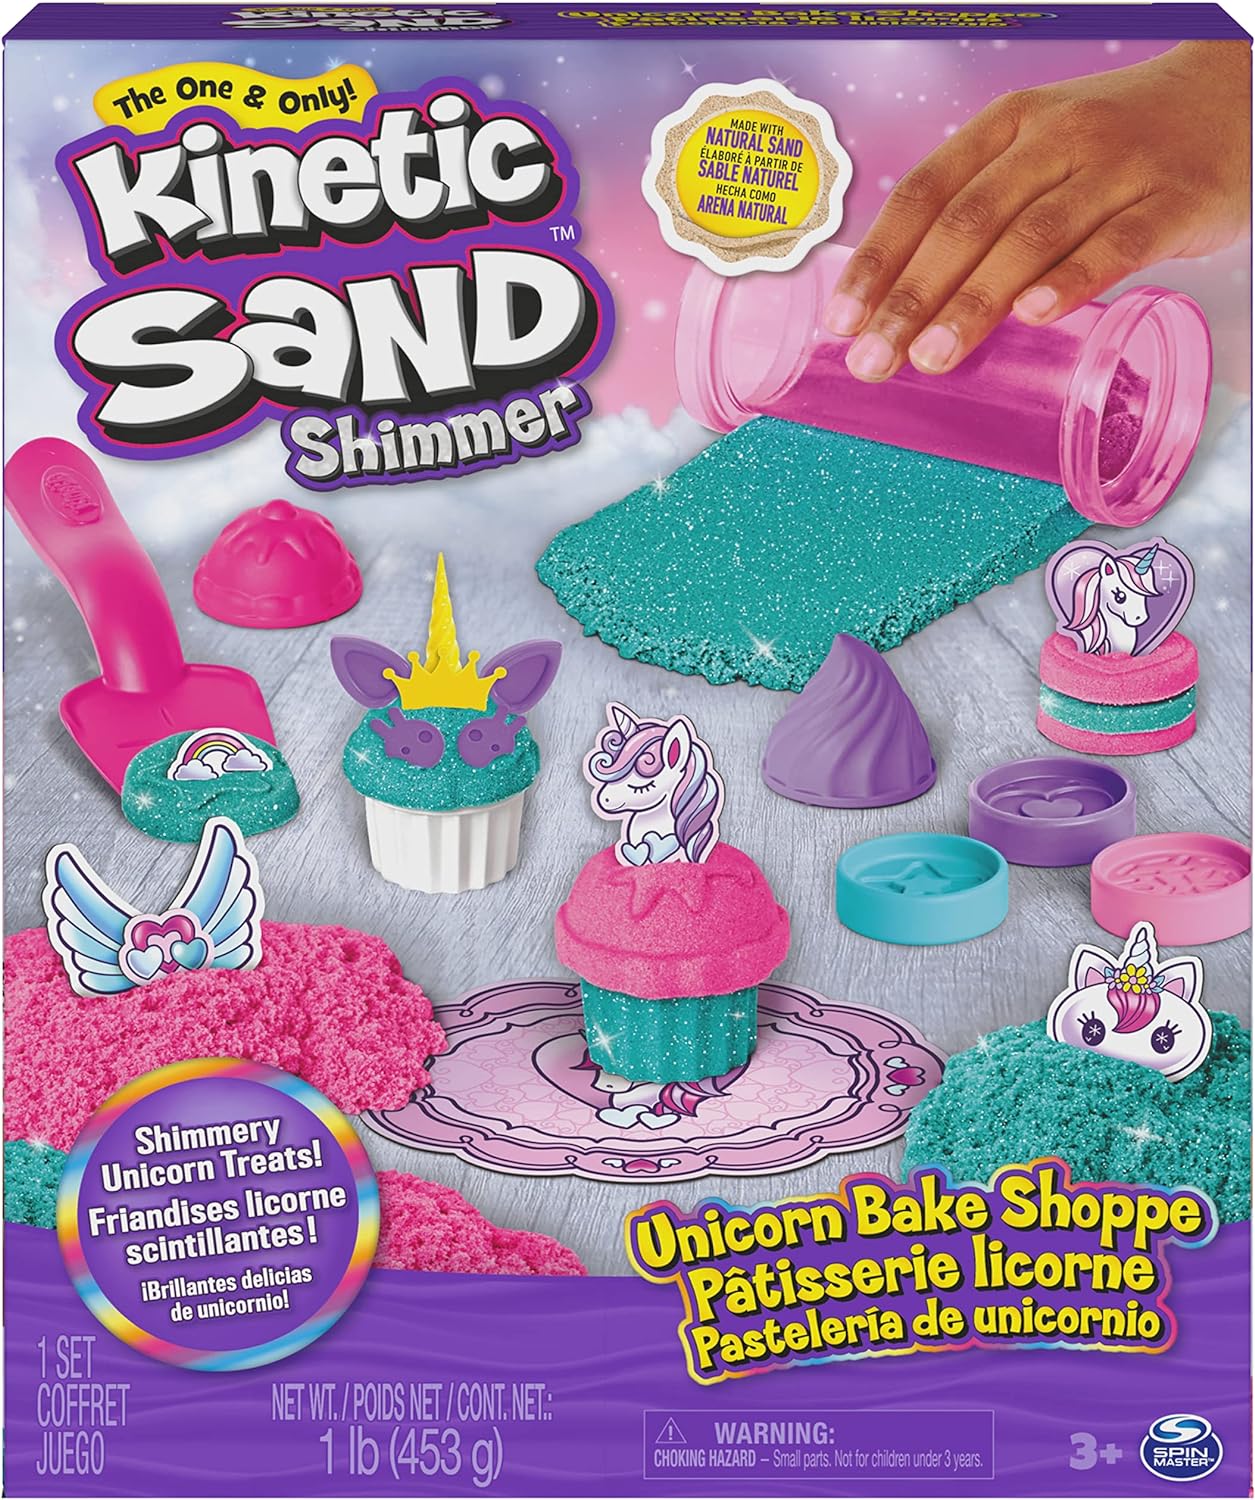 Kinetic Sand - Mallette de Construction - Sable magique à modeler